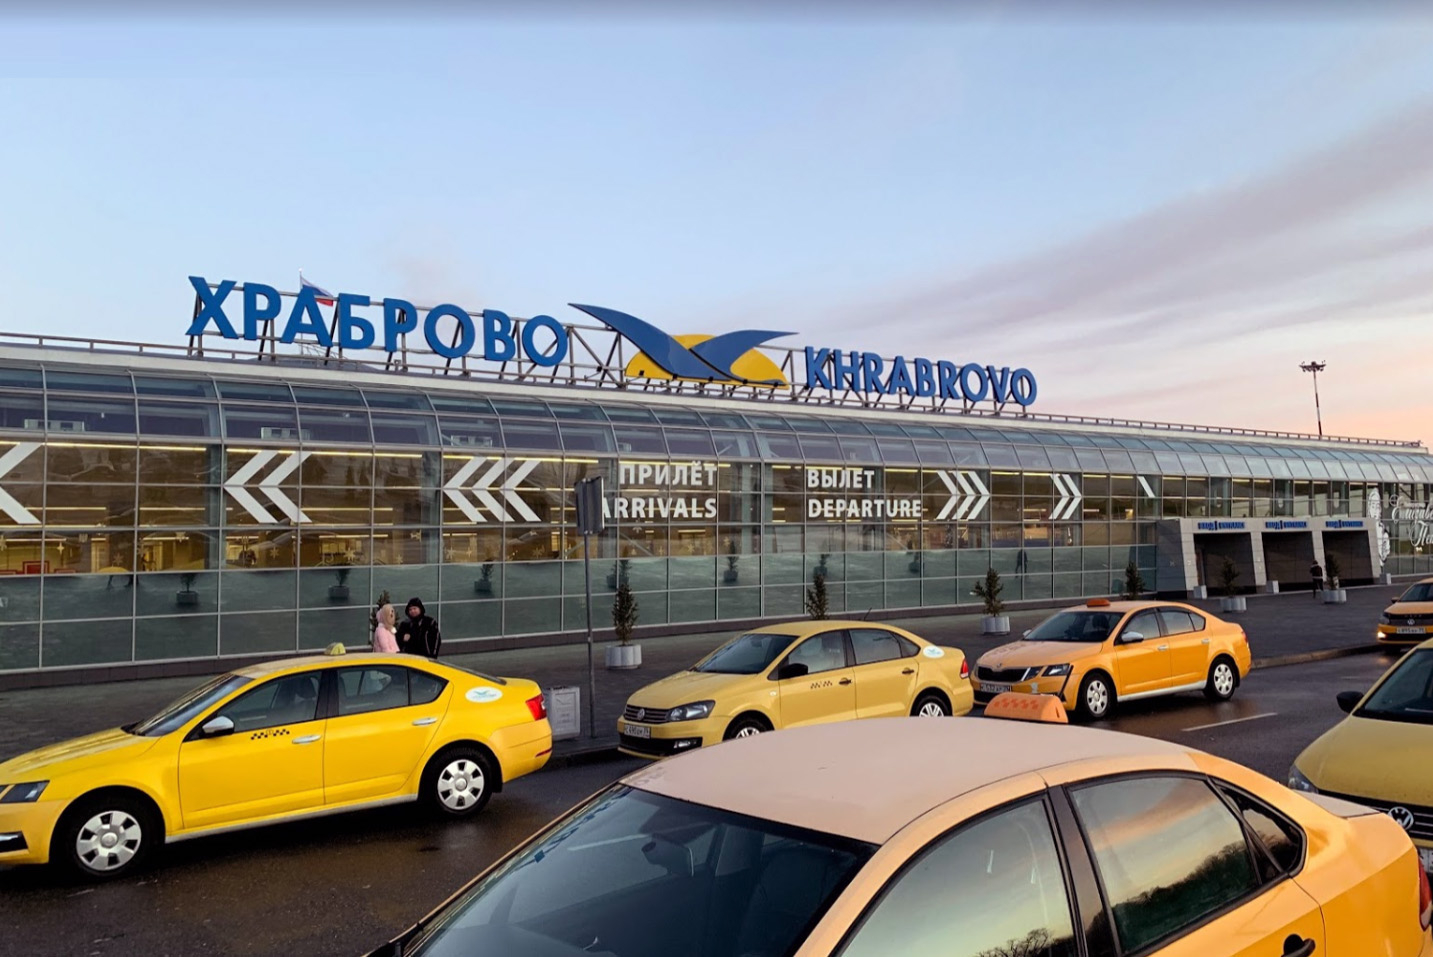 Аэропорт Калининграда Храброво такси трансфер